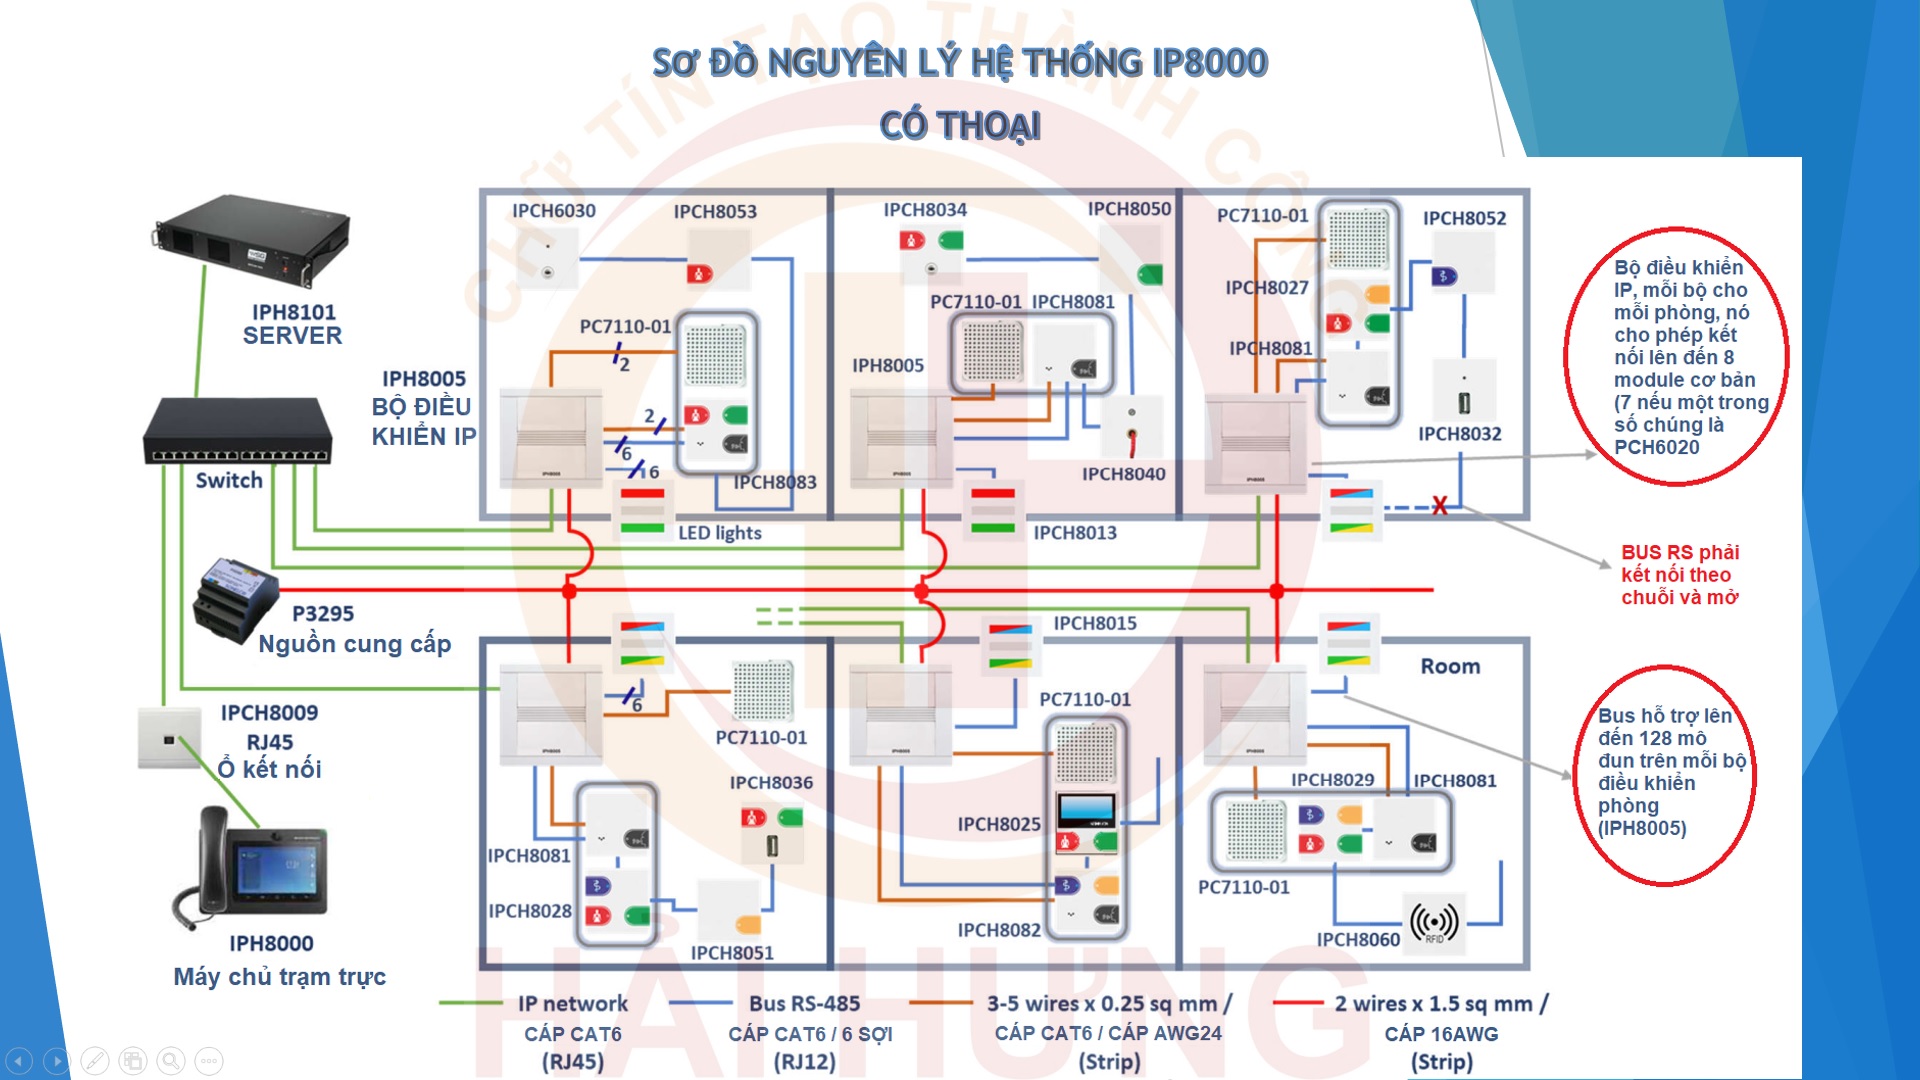 Sơ đồ nguyên lý hệ thống Sonelco IP8000